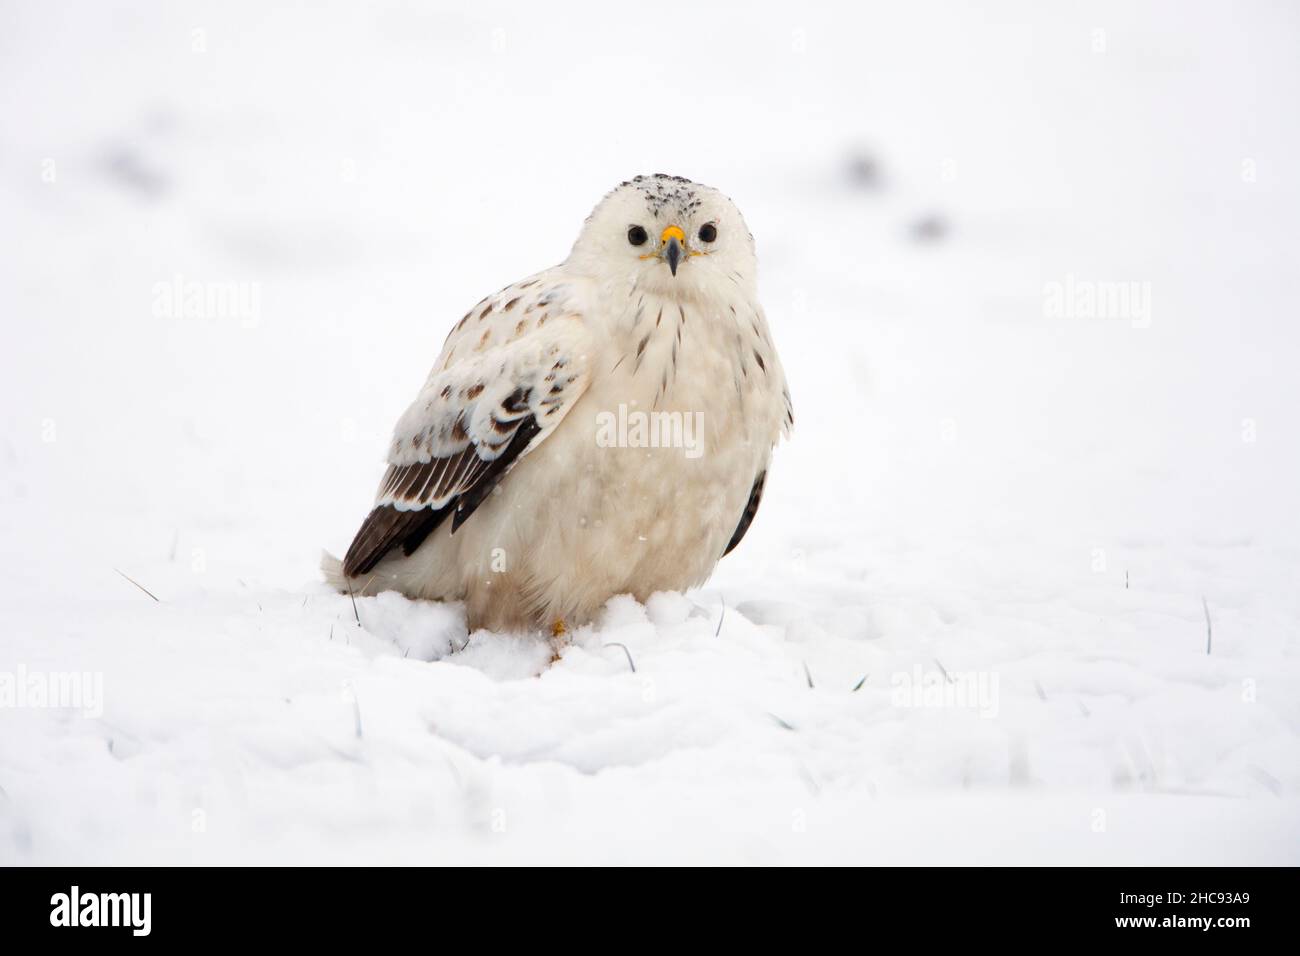 Buzzard commun, (Buteo buteo), avec un plumage blanc, assis sur un terrain enneigé, en hiver, Basse-Saxe, Allemagne Banque D'Images